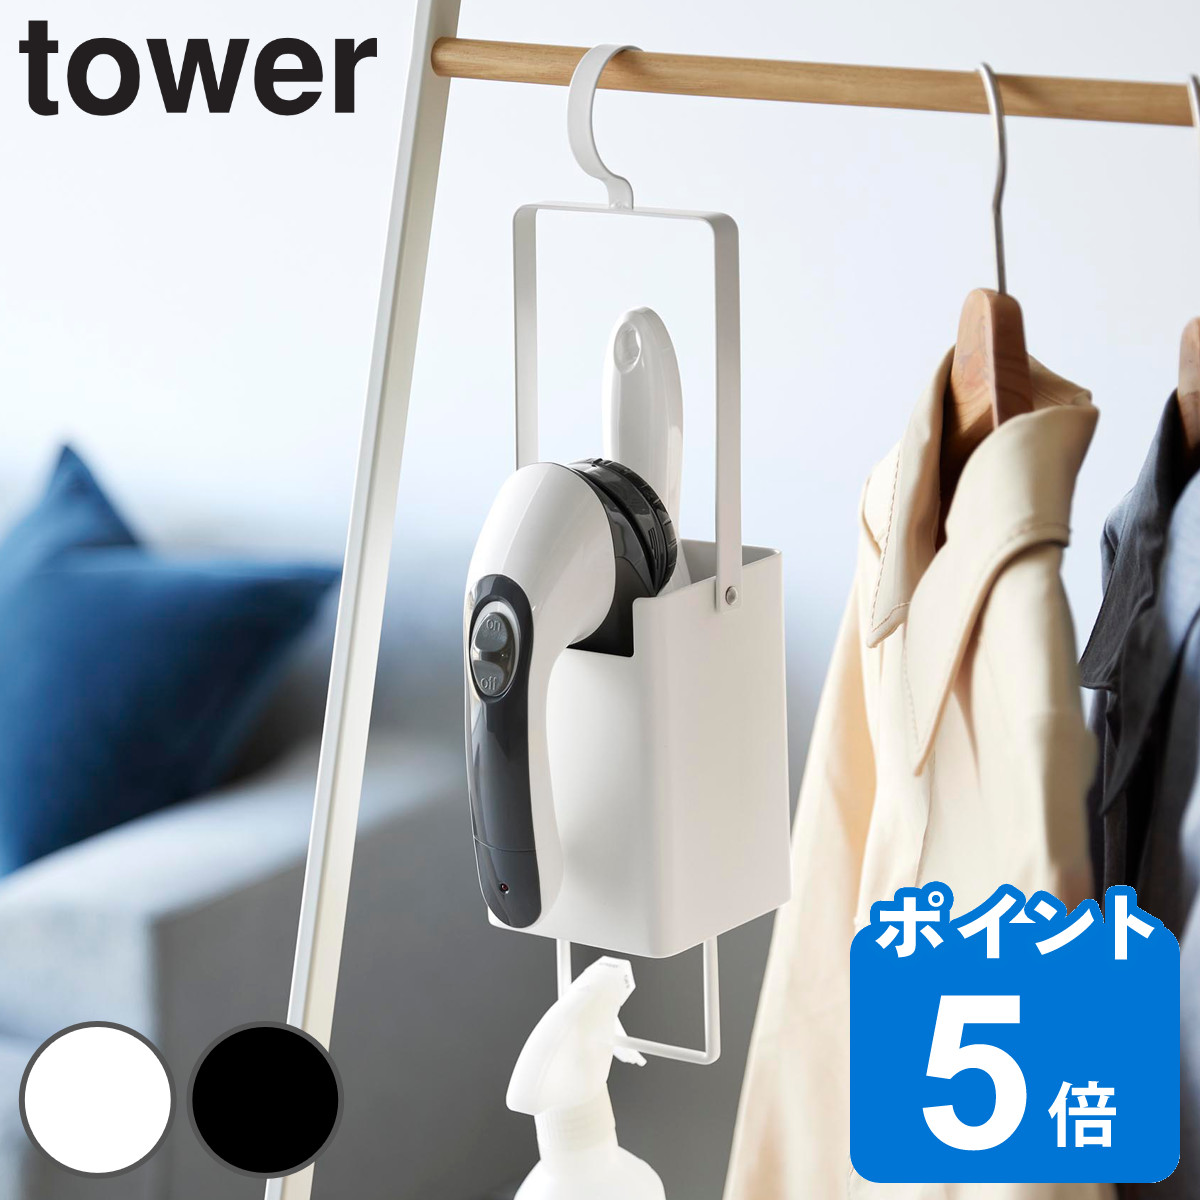 山崎実業 tower 衣類クリーナーツール収納ホルダー タワー